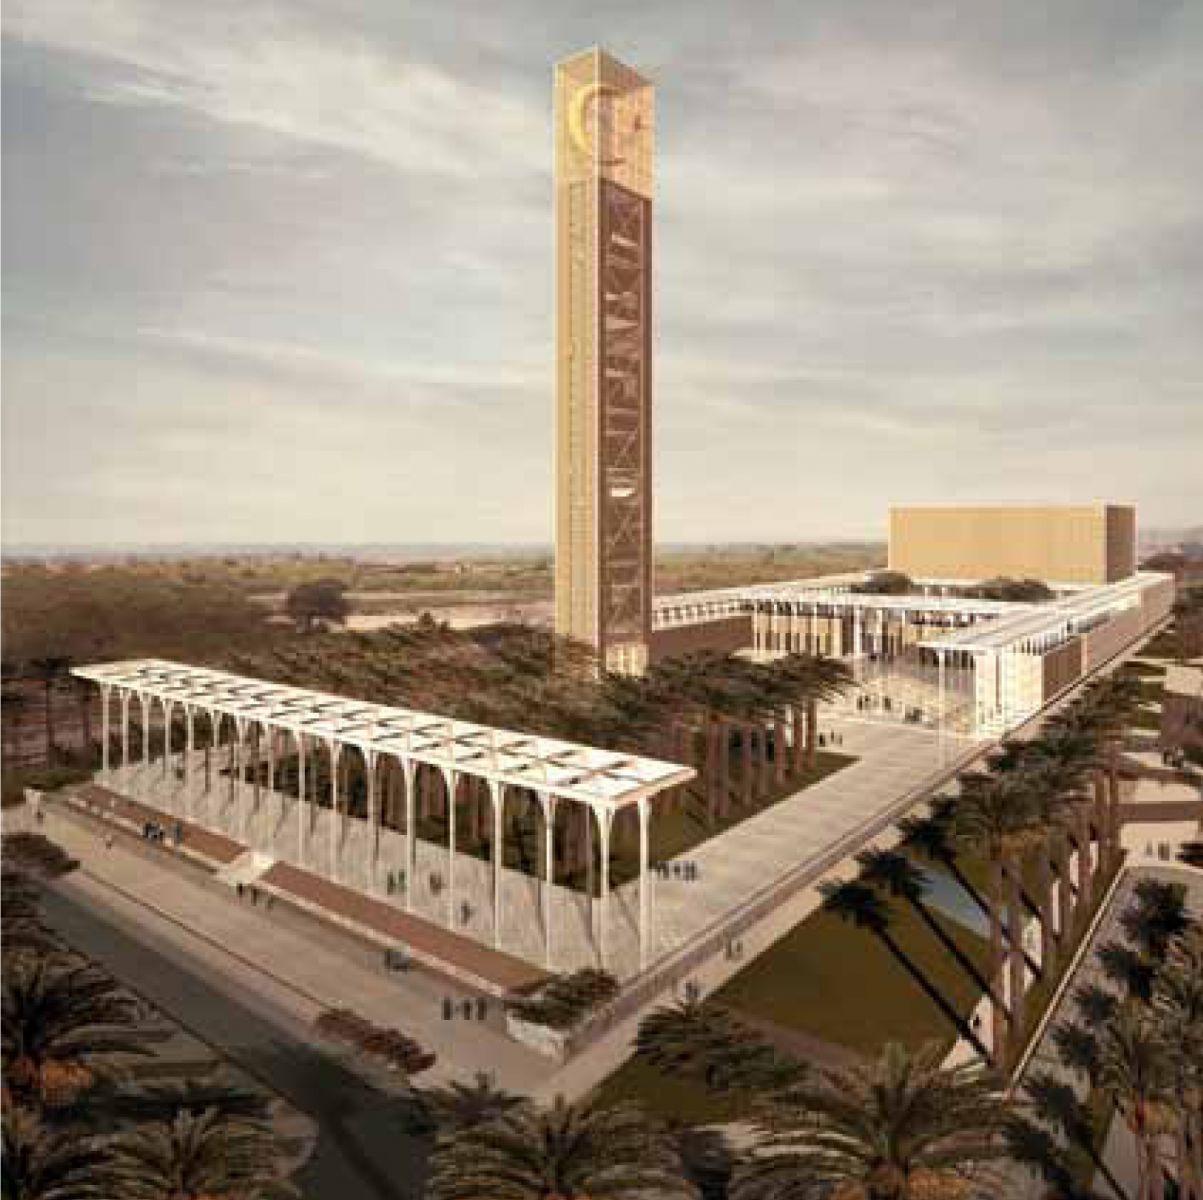 A világ legmagasabb minaretjét építik Algériában